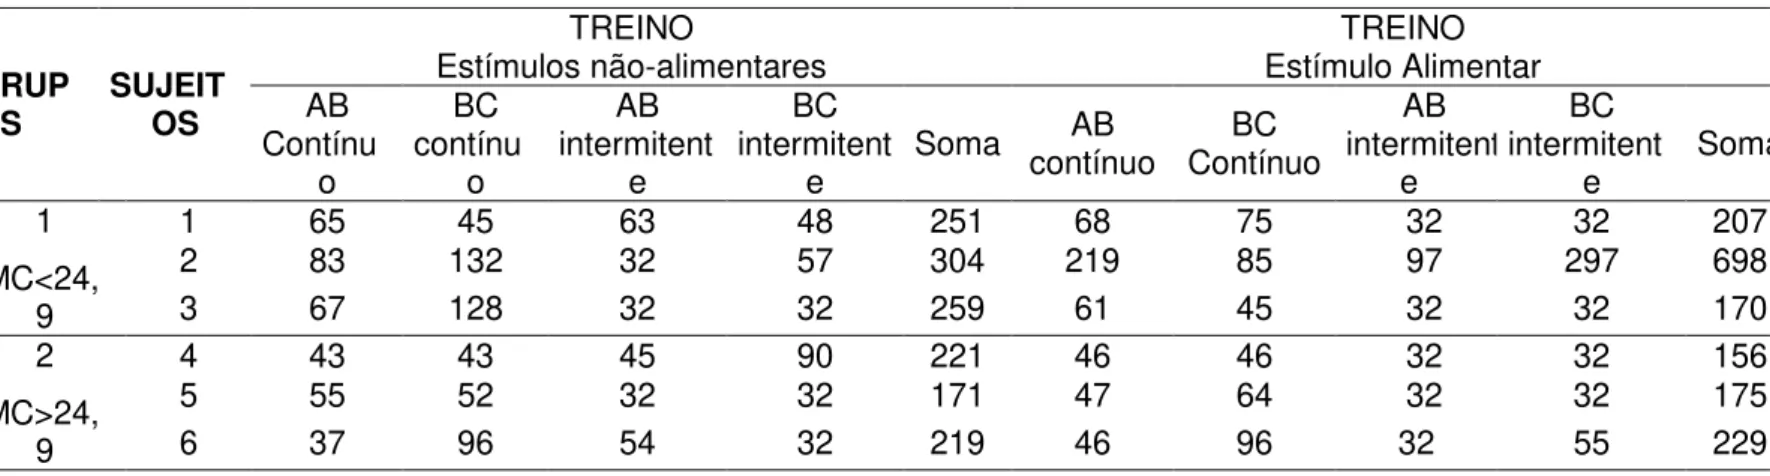 Tabela 3: Quantidade de tentativas nas relações AB e BC contínuo e intermitente nos treinos com estímulos não-alimentares e alimentares